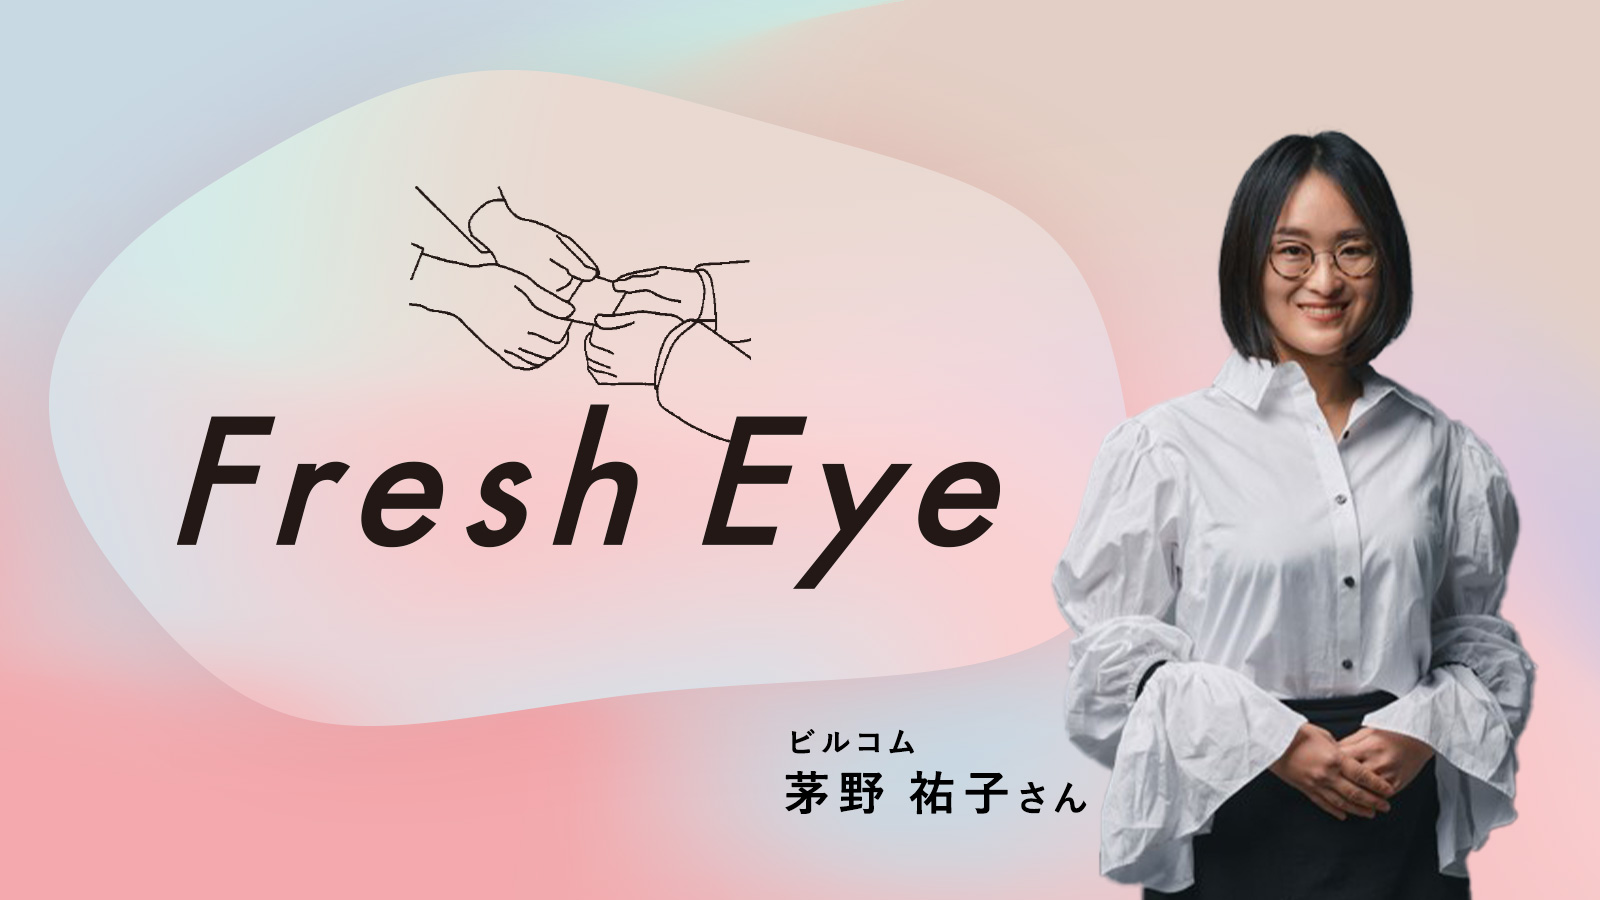 “推し”と歩む仕事人生／ビルコム 茅野祐子さん〈Fresh Eye〉